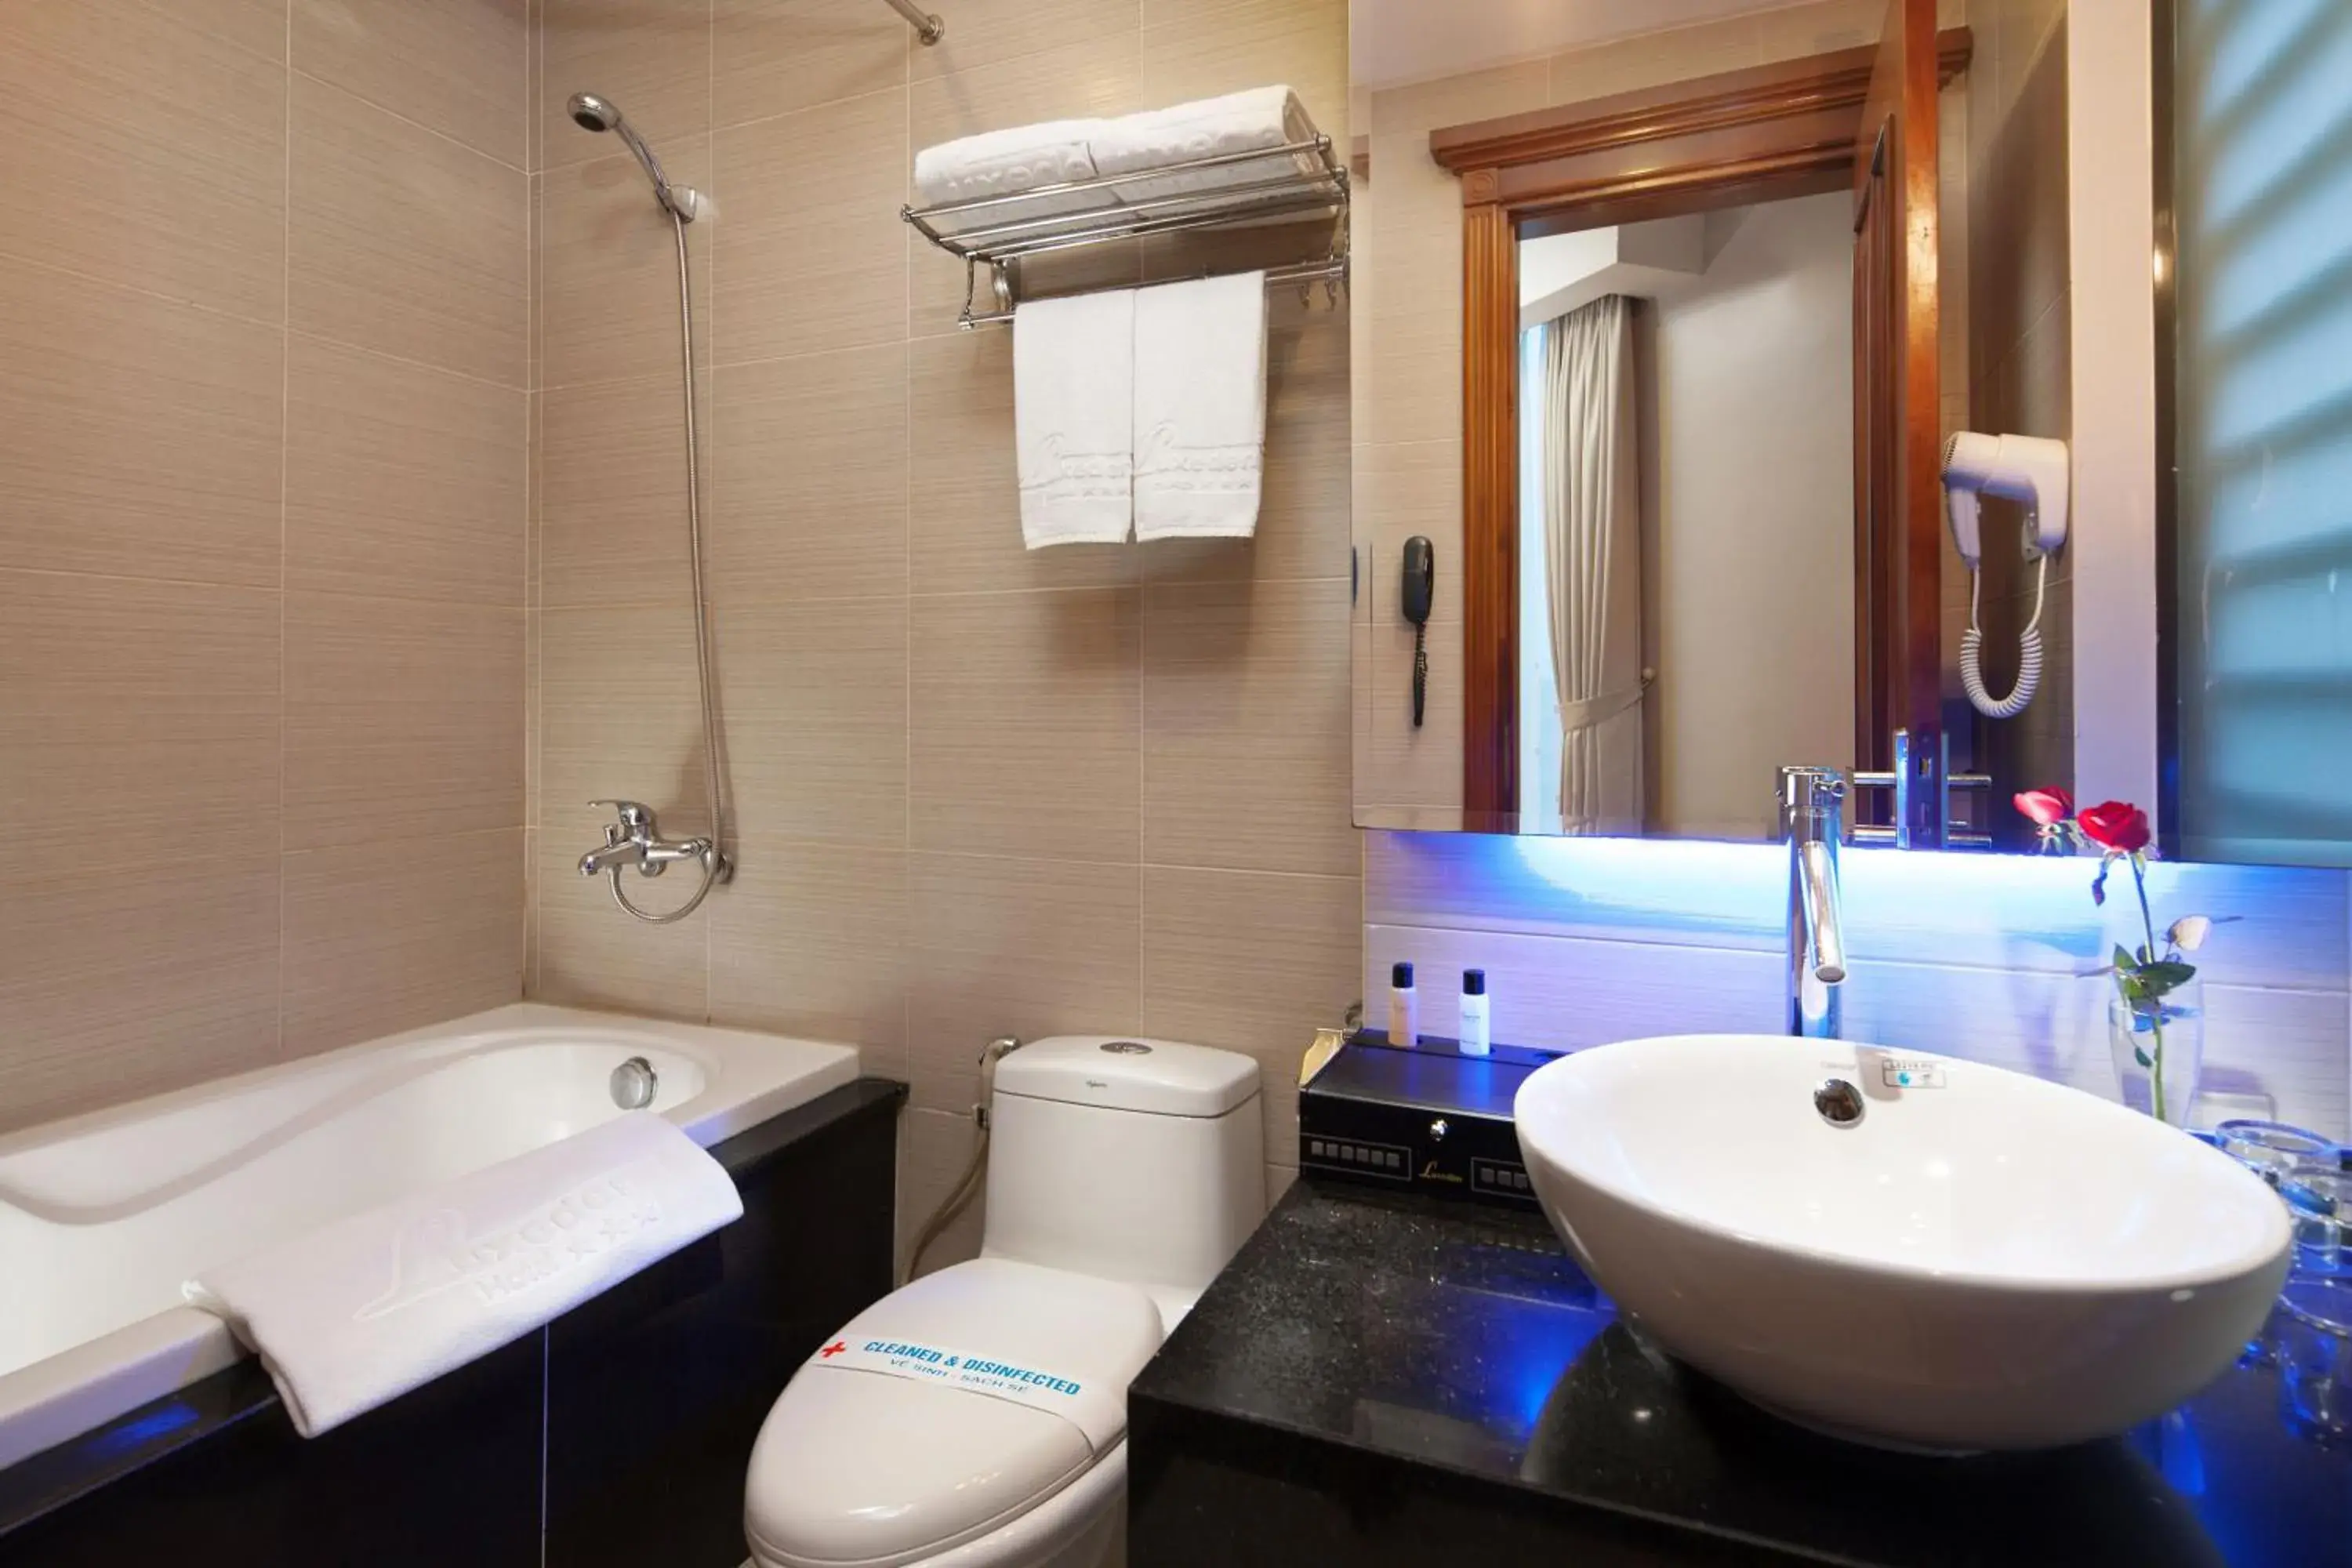 Bathroom in Luxeden Hotel